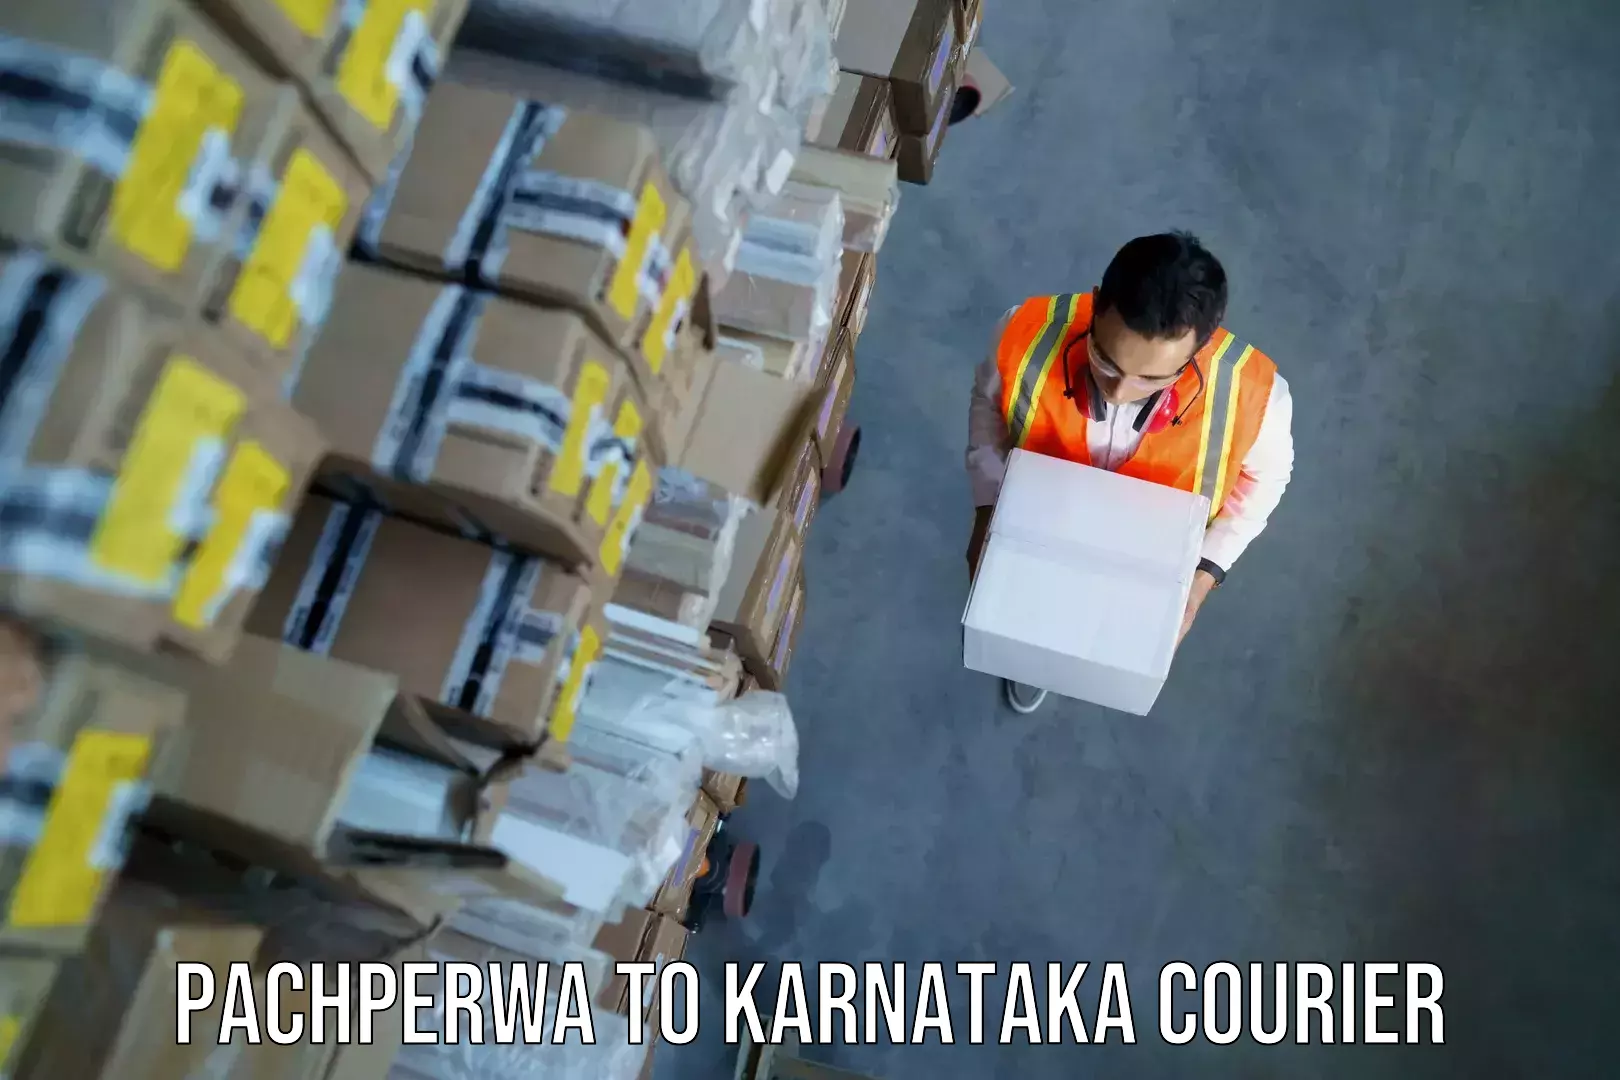 Luggage transport consulting Pachperwa to Karnataka